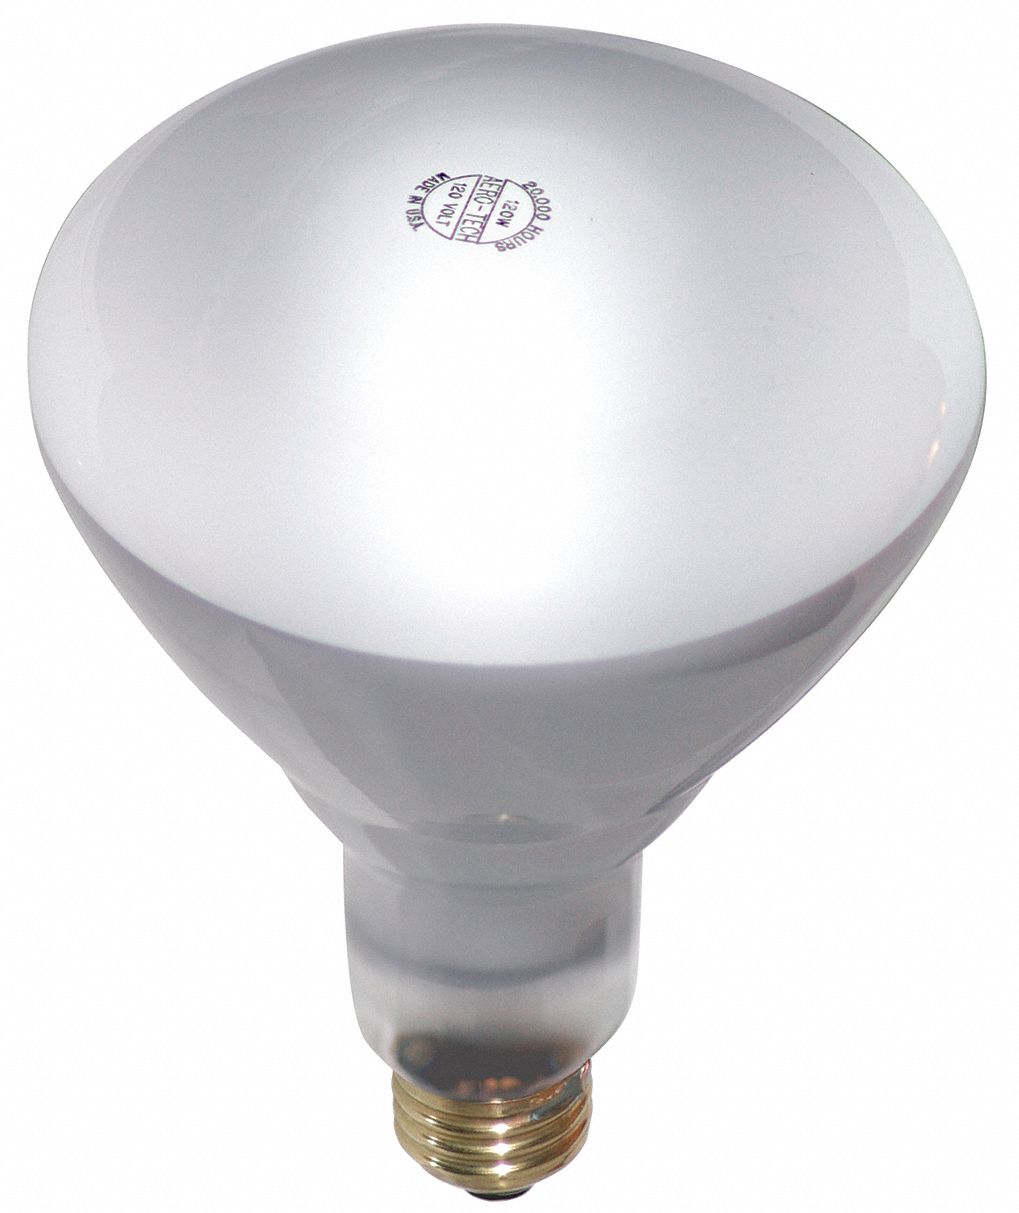 Incandescent Bulb: Incandescent, BR40, Medium Screw (E26), 120 W Watt, 2800K, Frosted